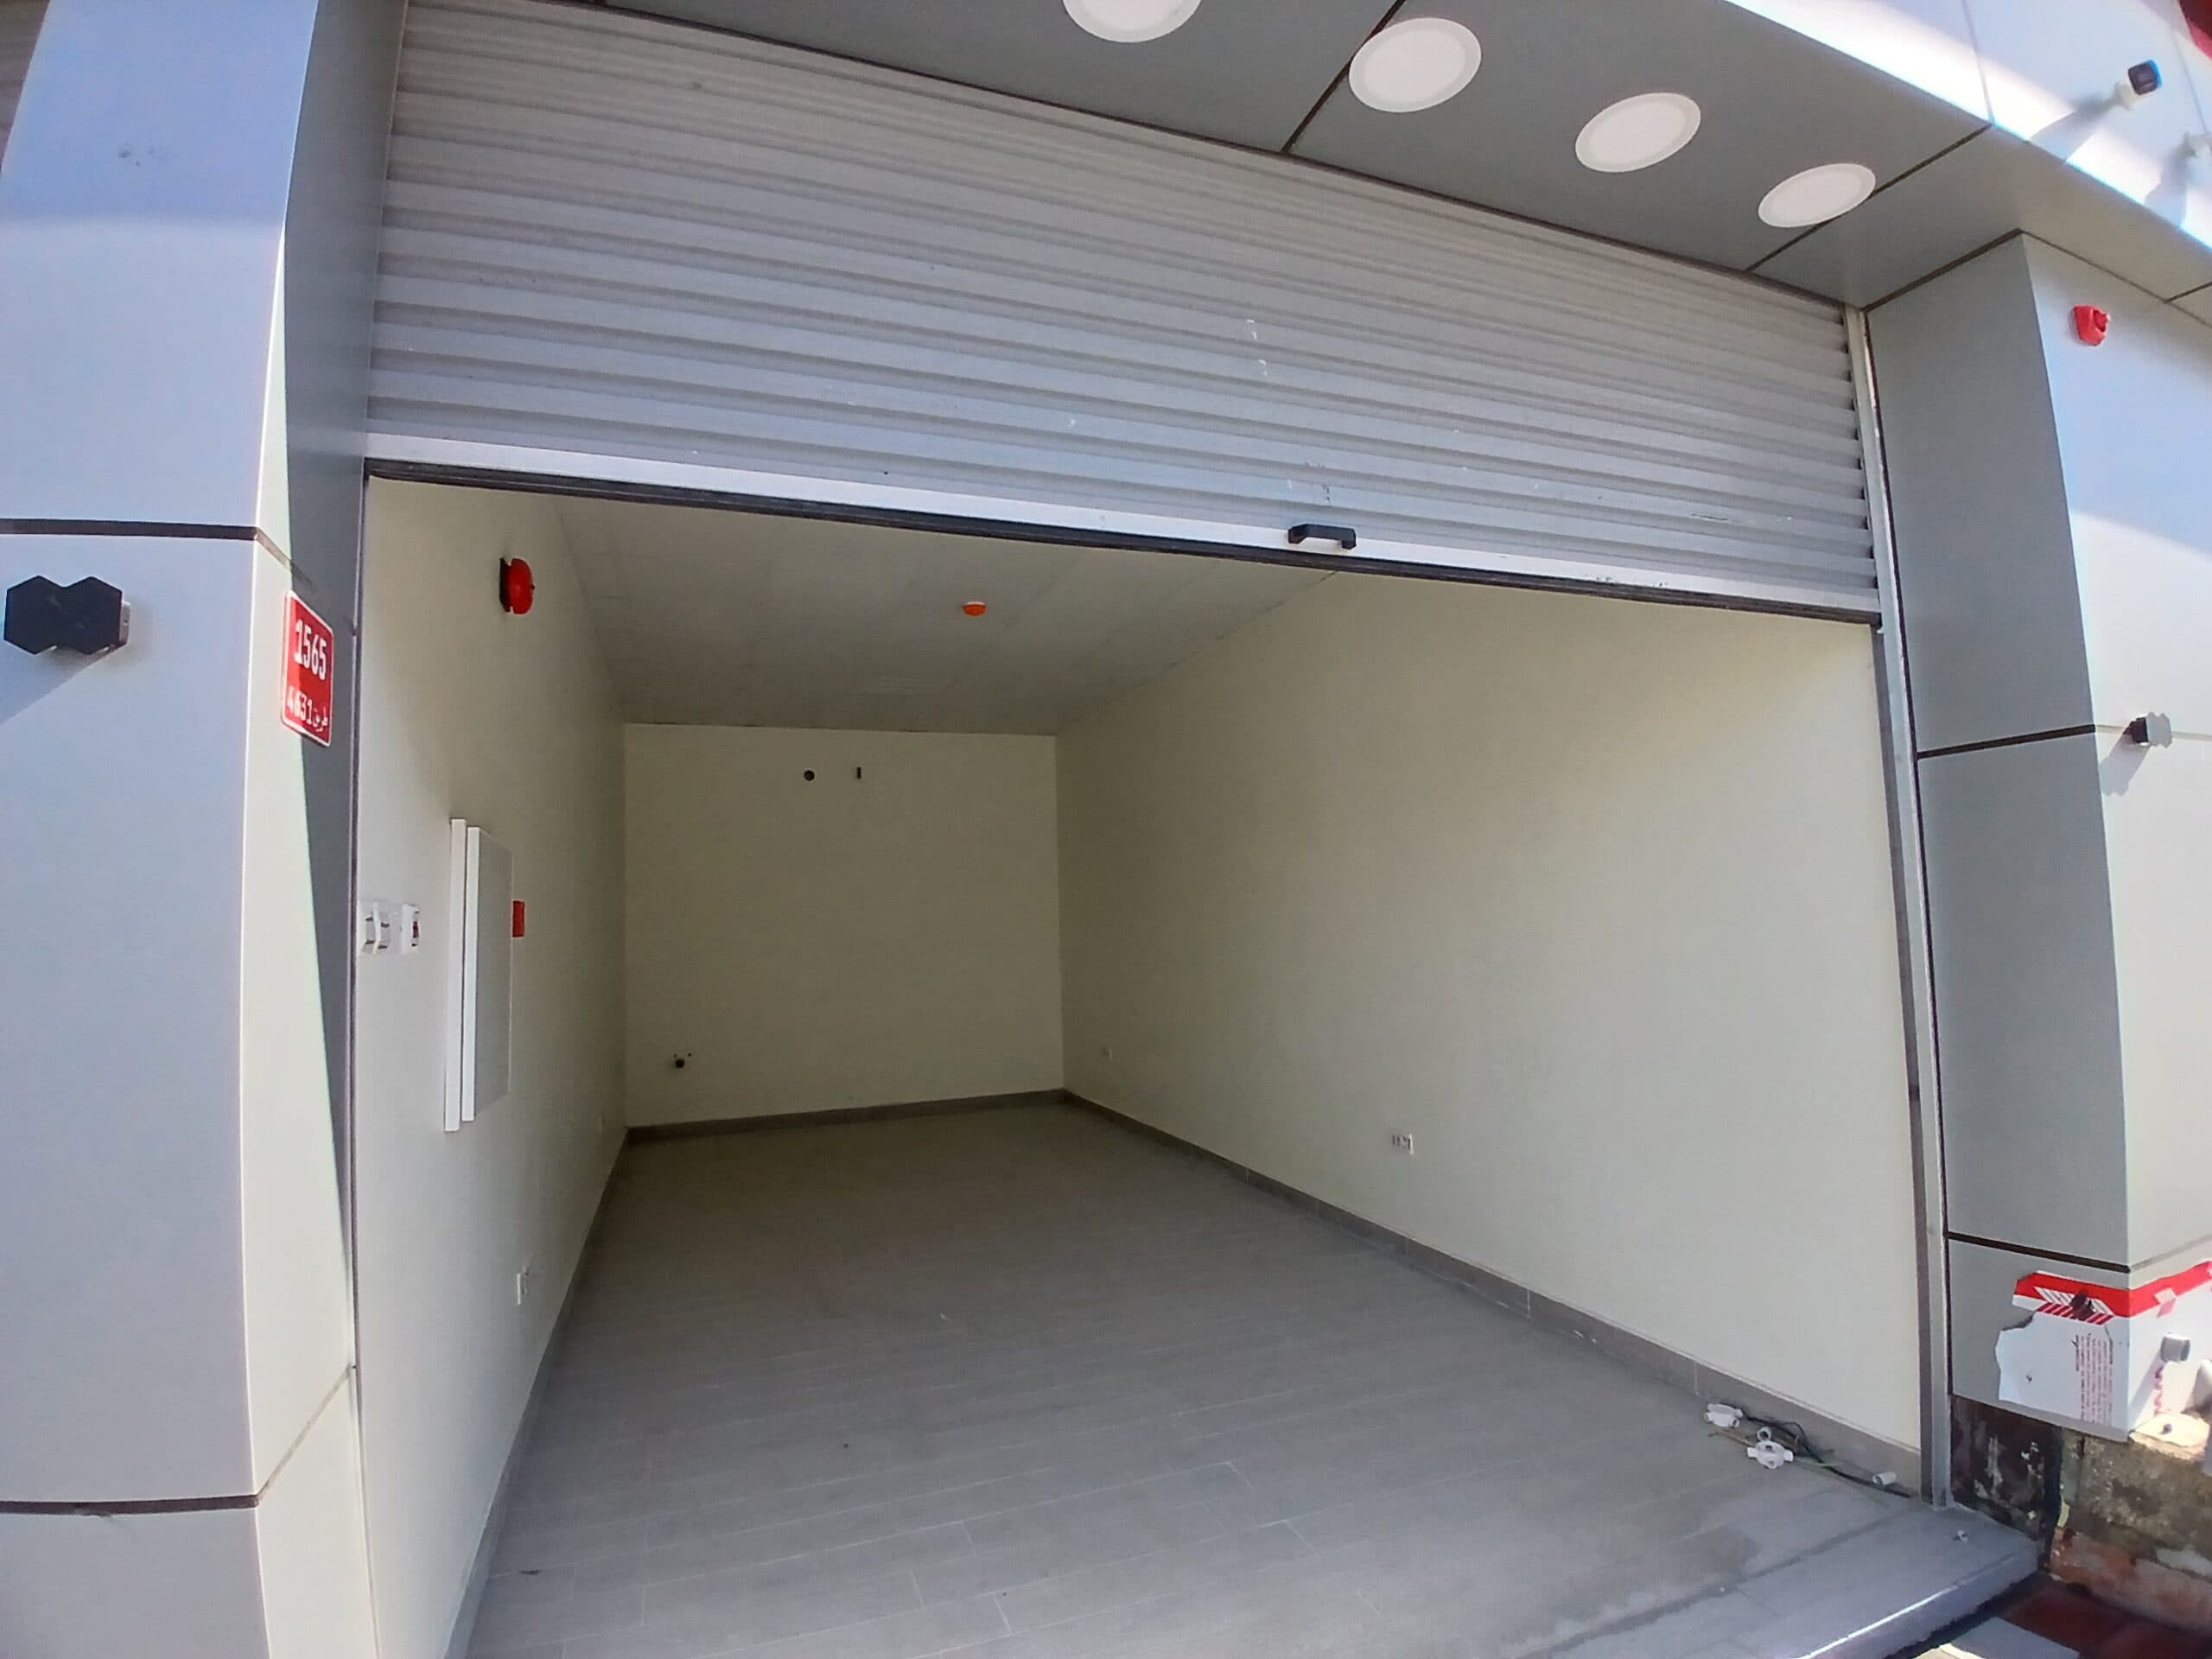 مقطورة صندوق بضائع بيضاء فارغة مع مصراع مفتوح، تظهر مساحة داخلية شاغرة بأرضية رمادية، مثالية للتعديل التحديثي في متجر شبه مجهز.